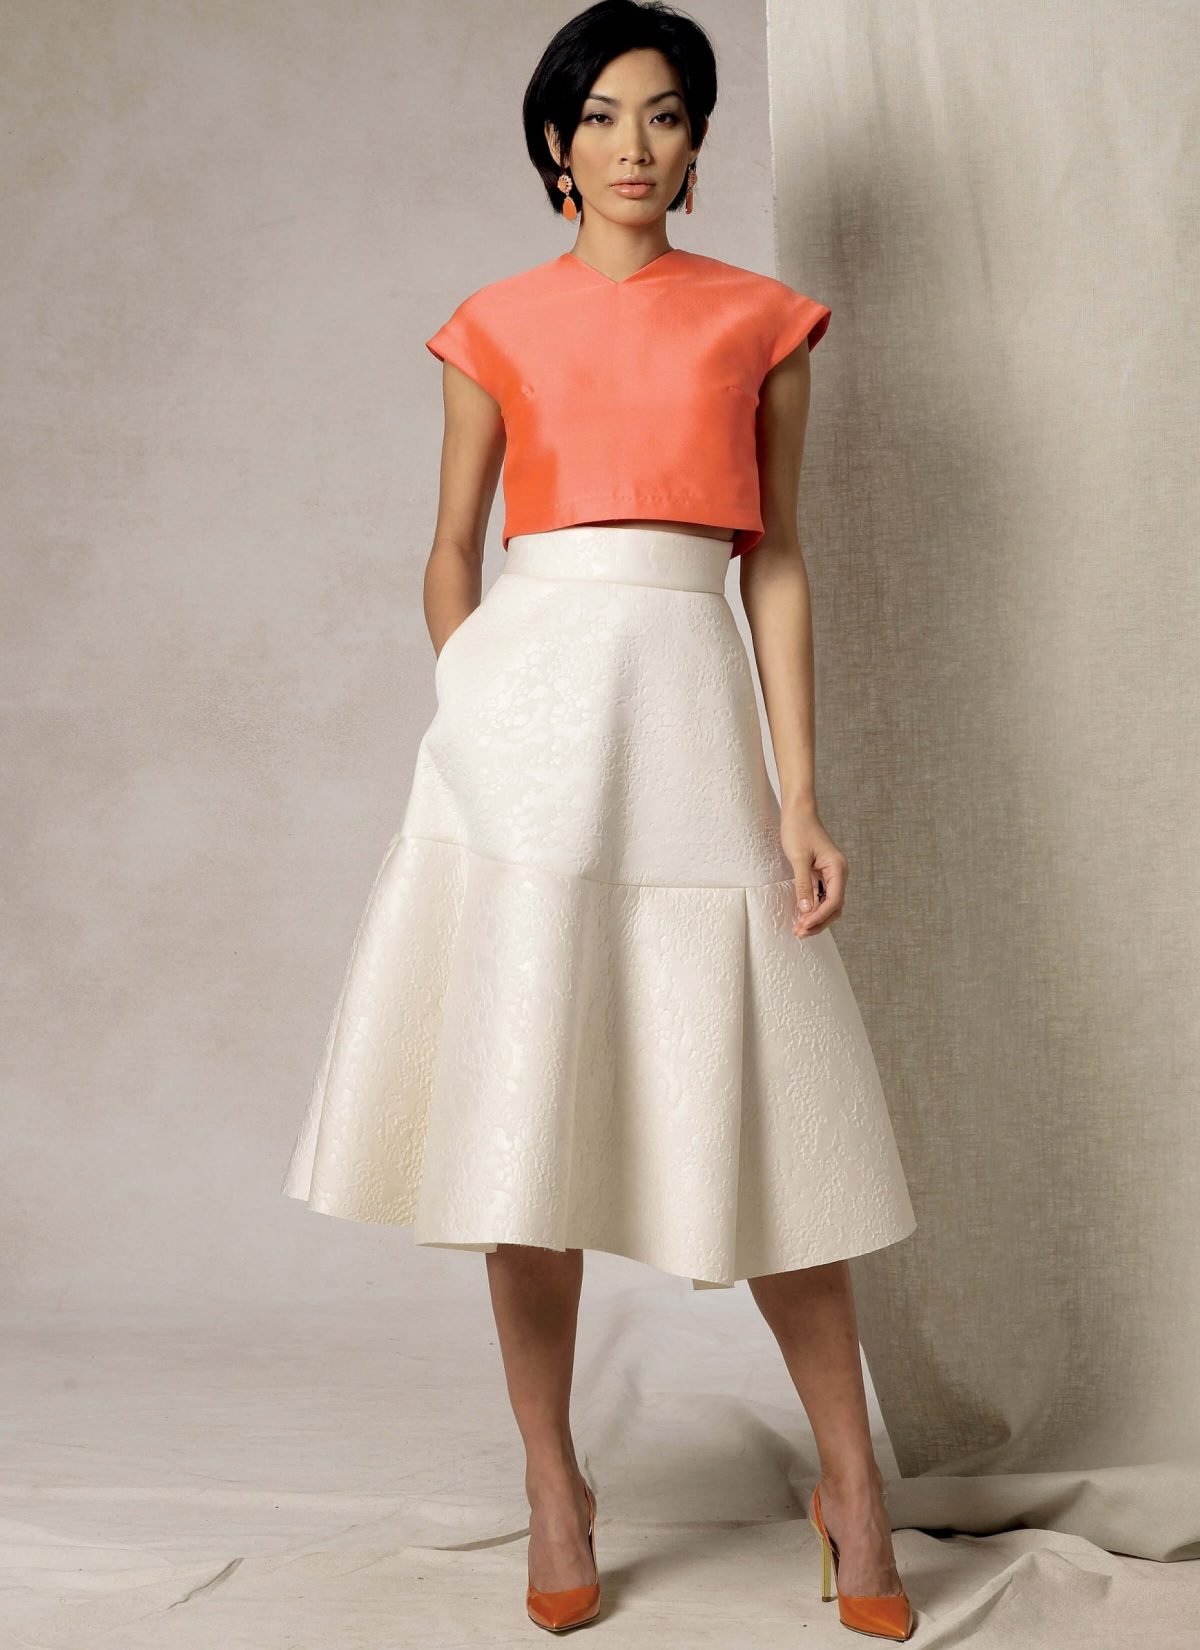 Vogue Patterns V1486 Misses' Crop Top and Flared Yoke Skirt